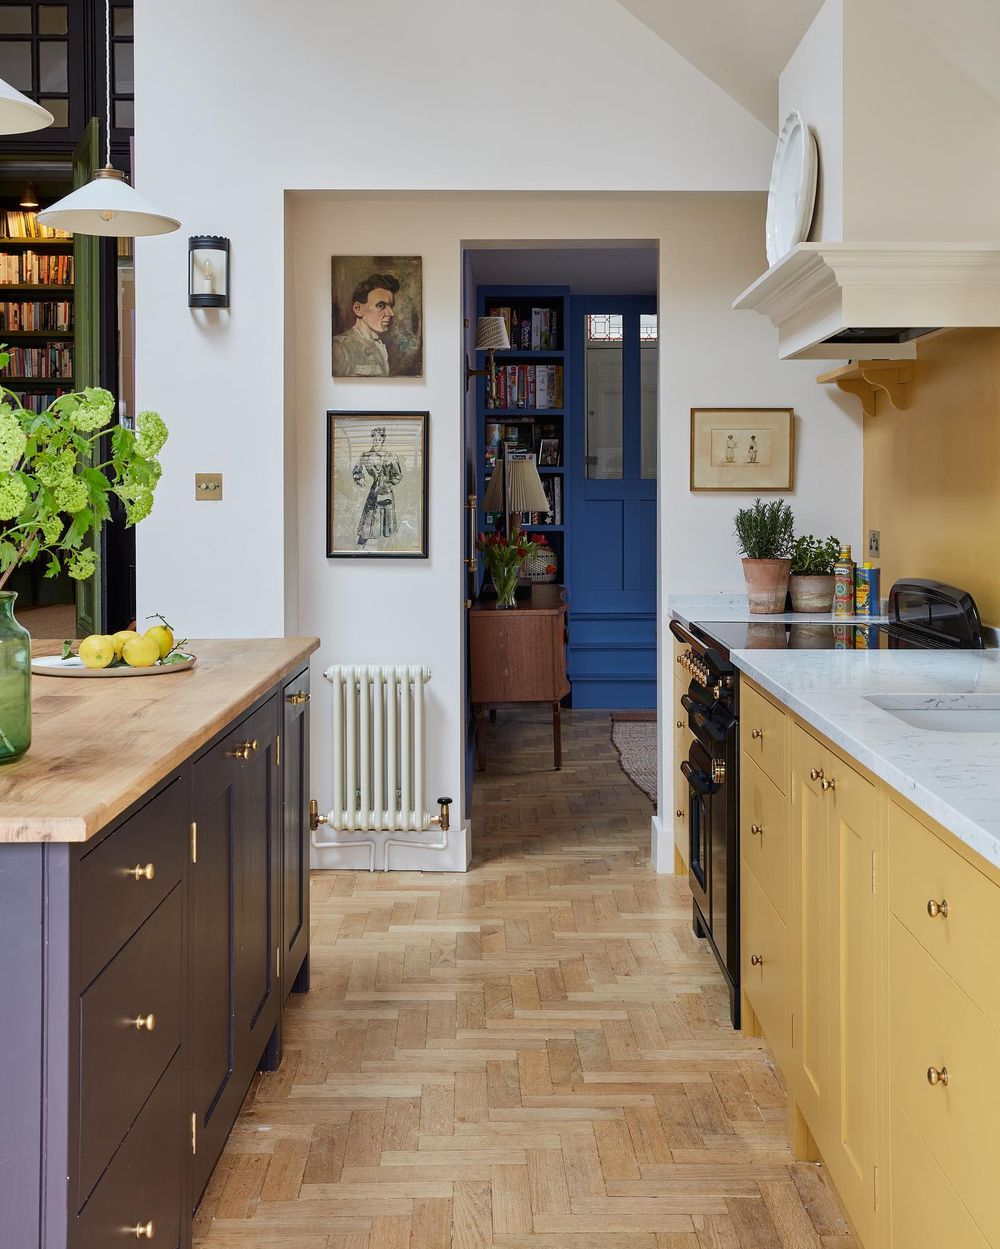 British interior designers kitchen sarahbrowninteriors